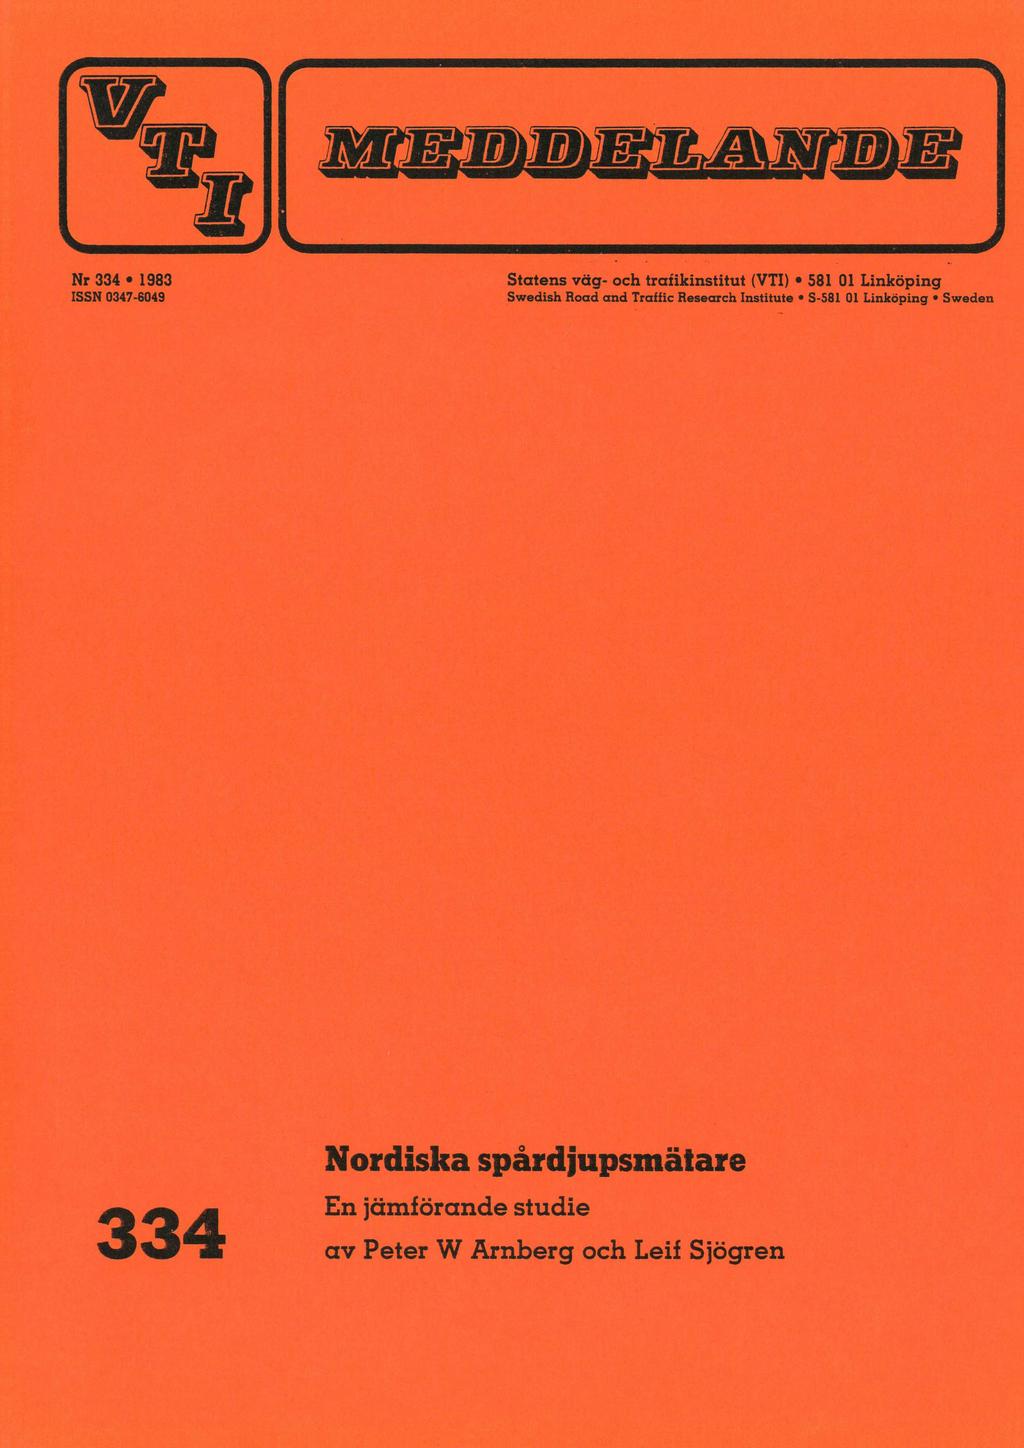 Nr 334 e 1983 ISSN 0347-6049 Statens väg- och tratikinstitut (VTI) * 581 01 Linköping Swedish Road and Traffic Research